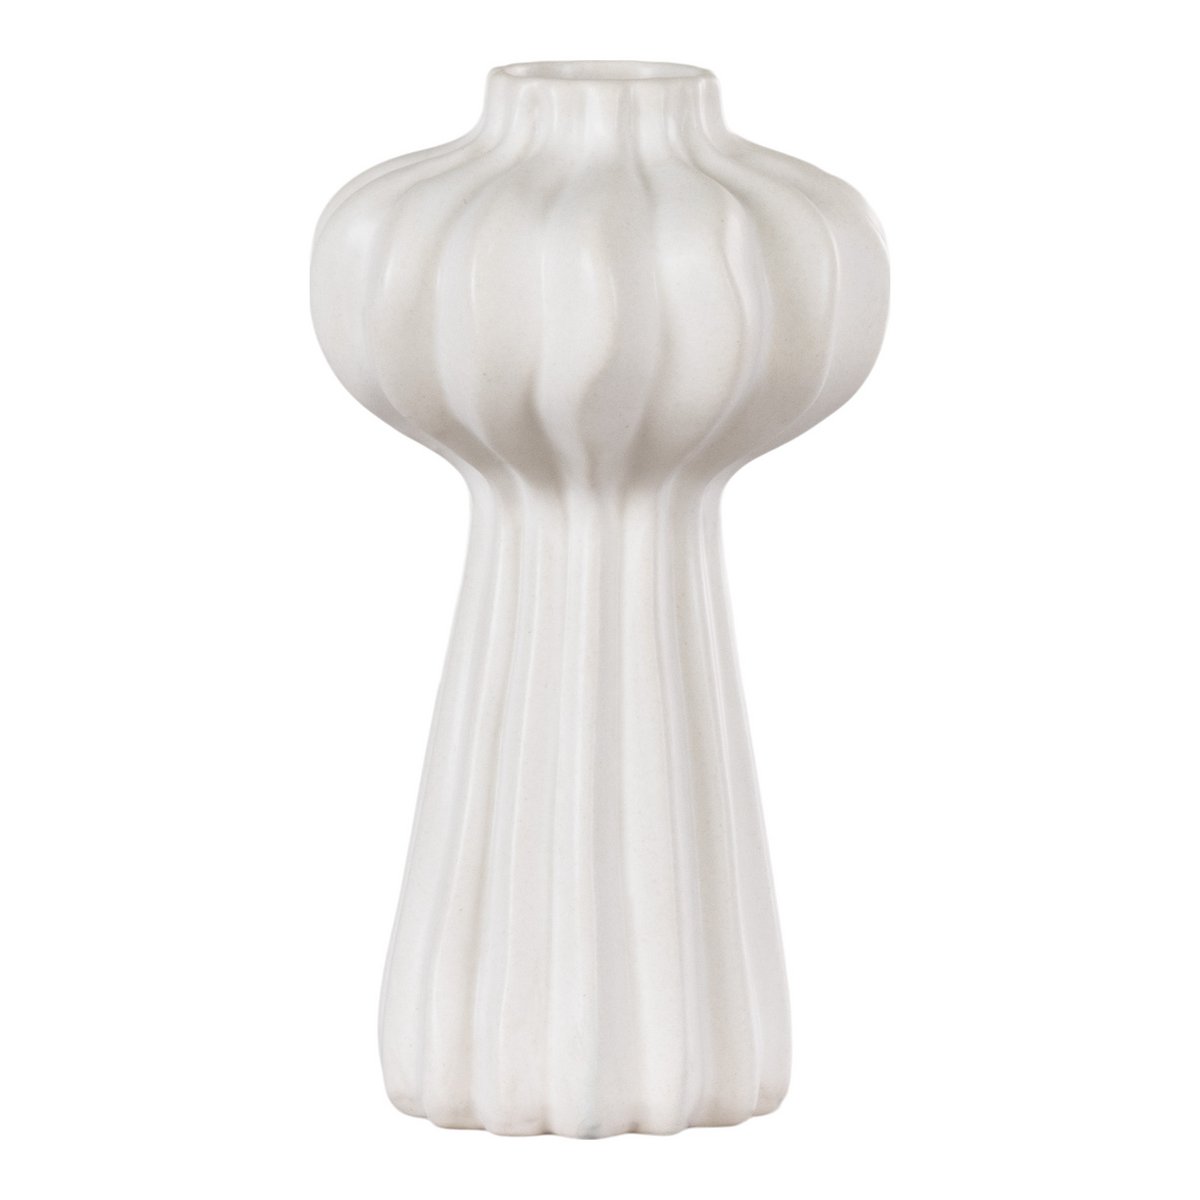 Vase - White